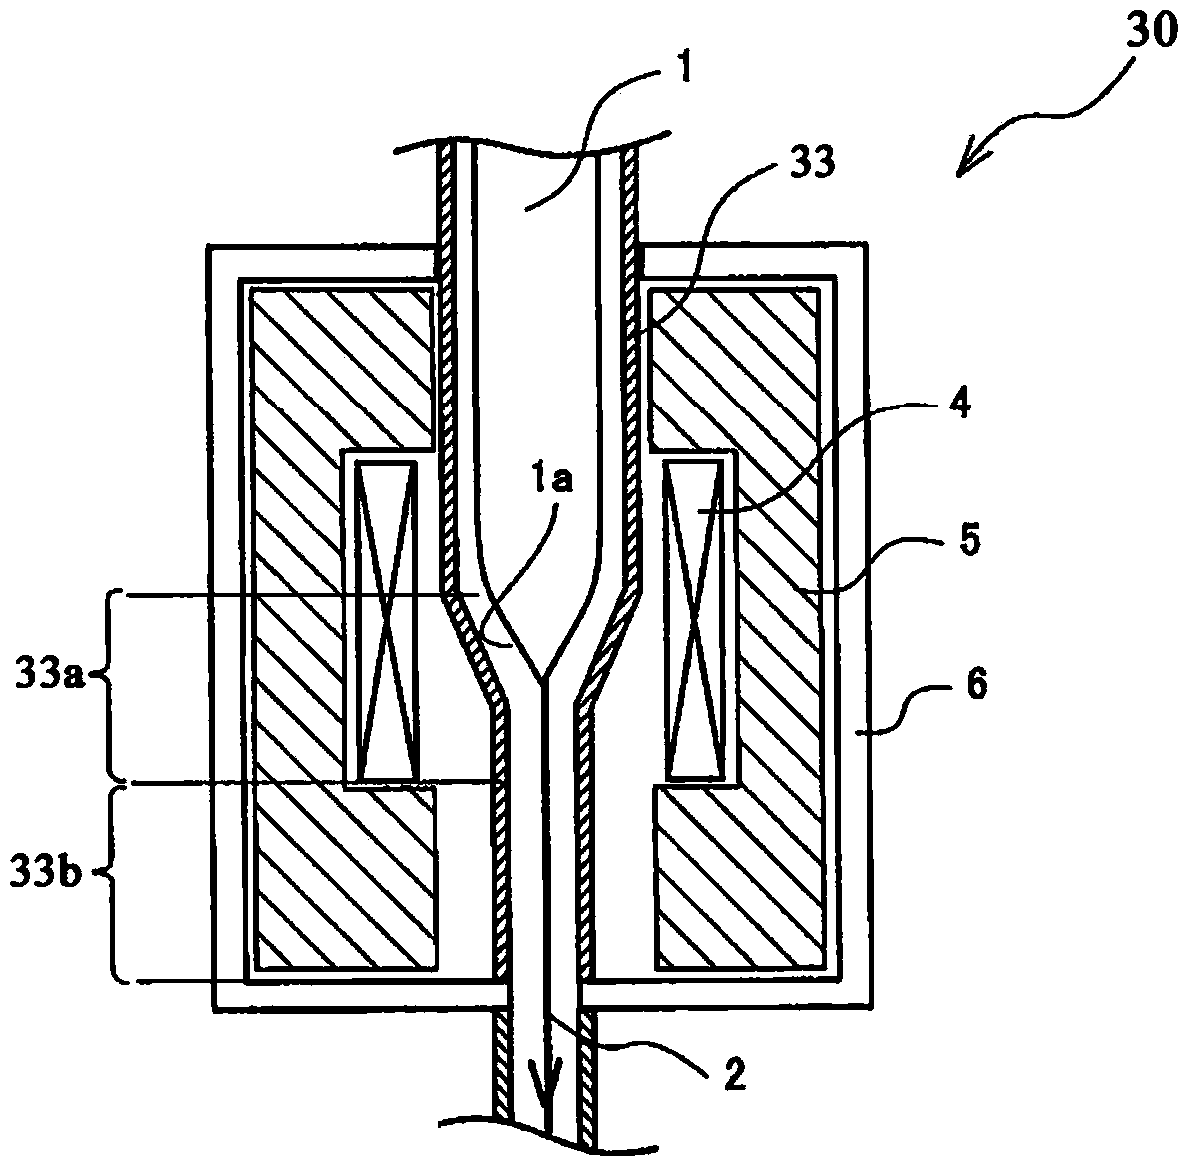 Optical fiber drawing furnace